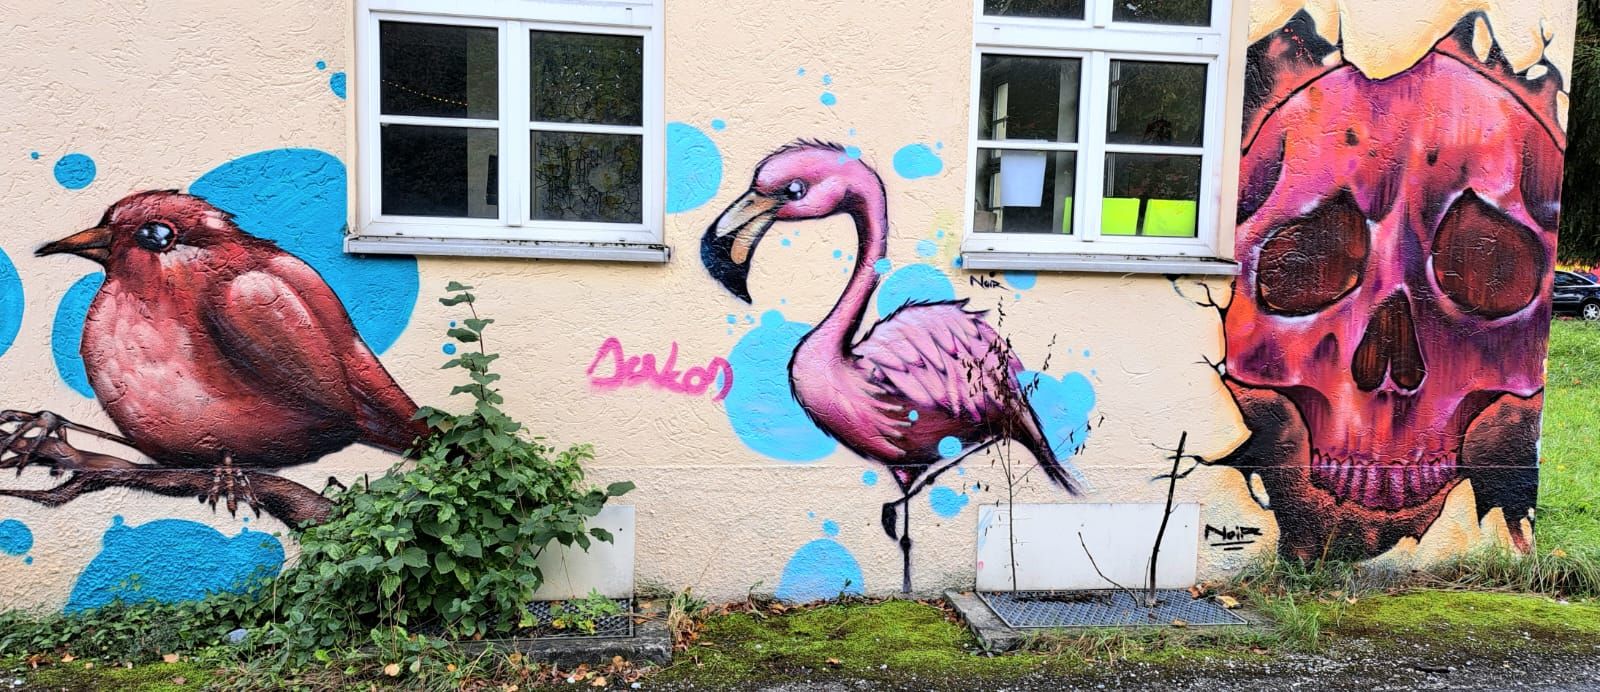 Flamingo an der Wand